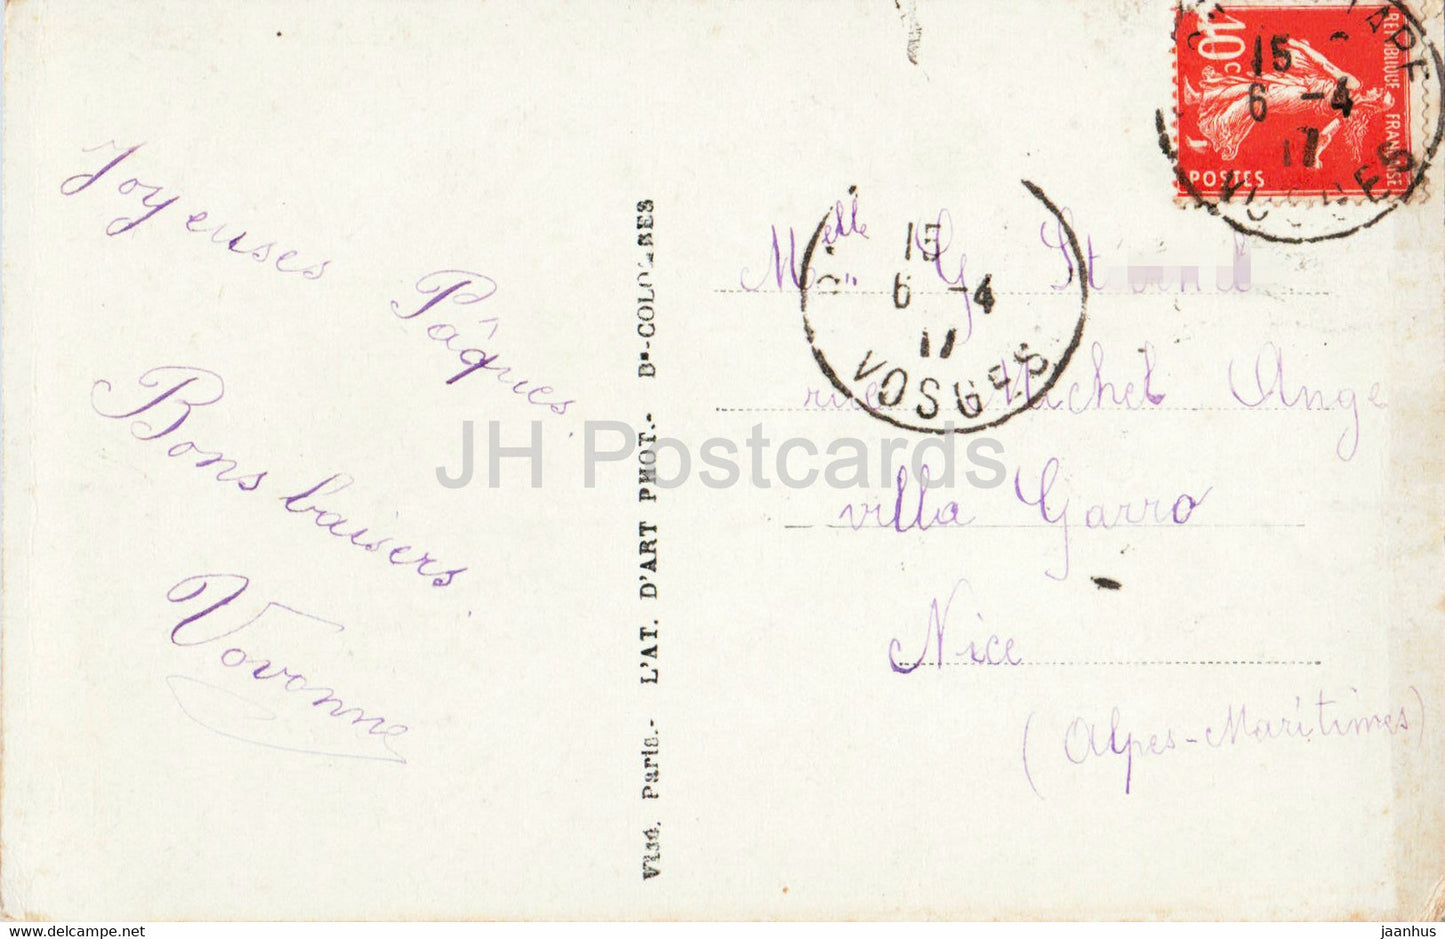 Carte de voeux de Pâques - Les Fleurs et les souhaits - fille - Furia - 1810 - carte postale ancienne - 1917 - France - occasion